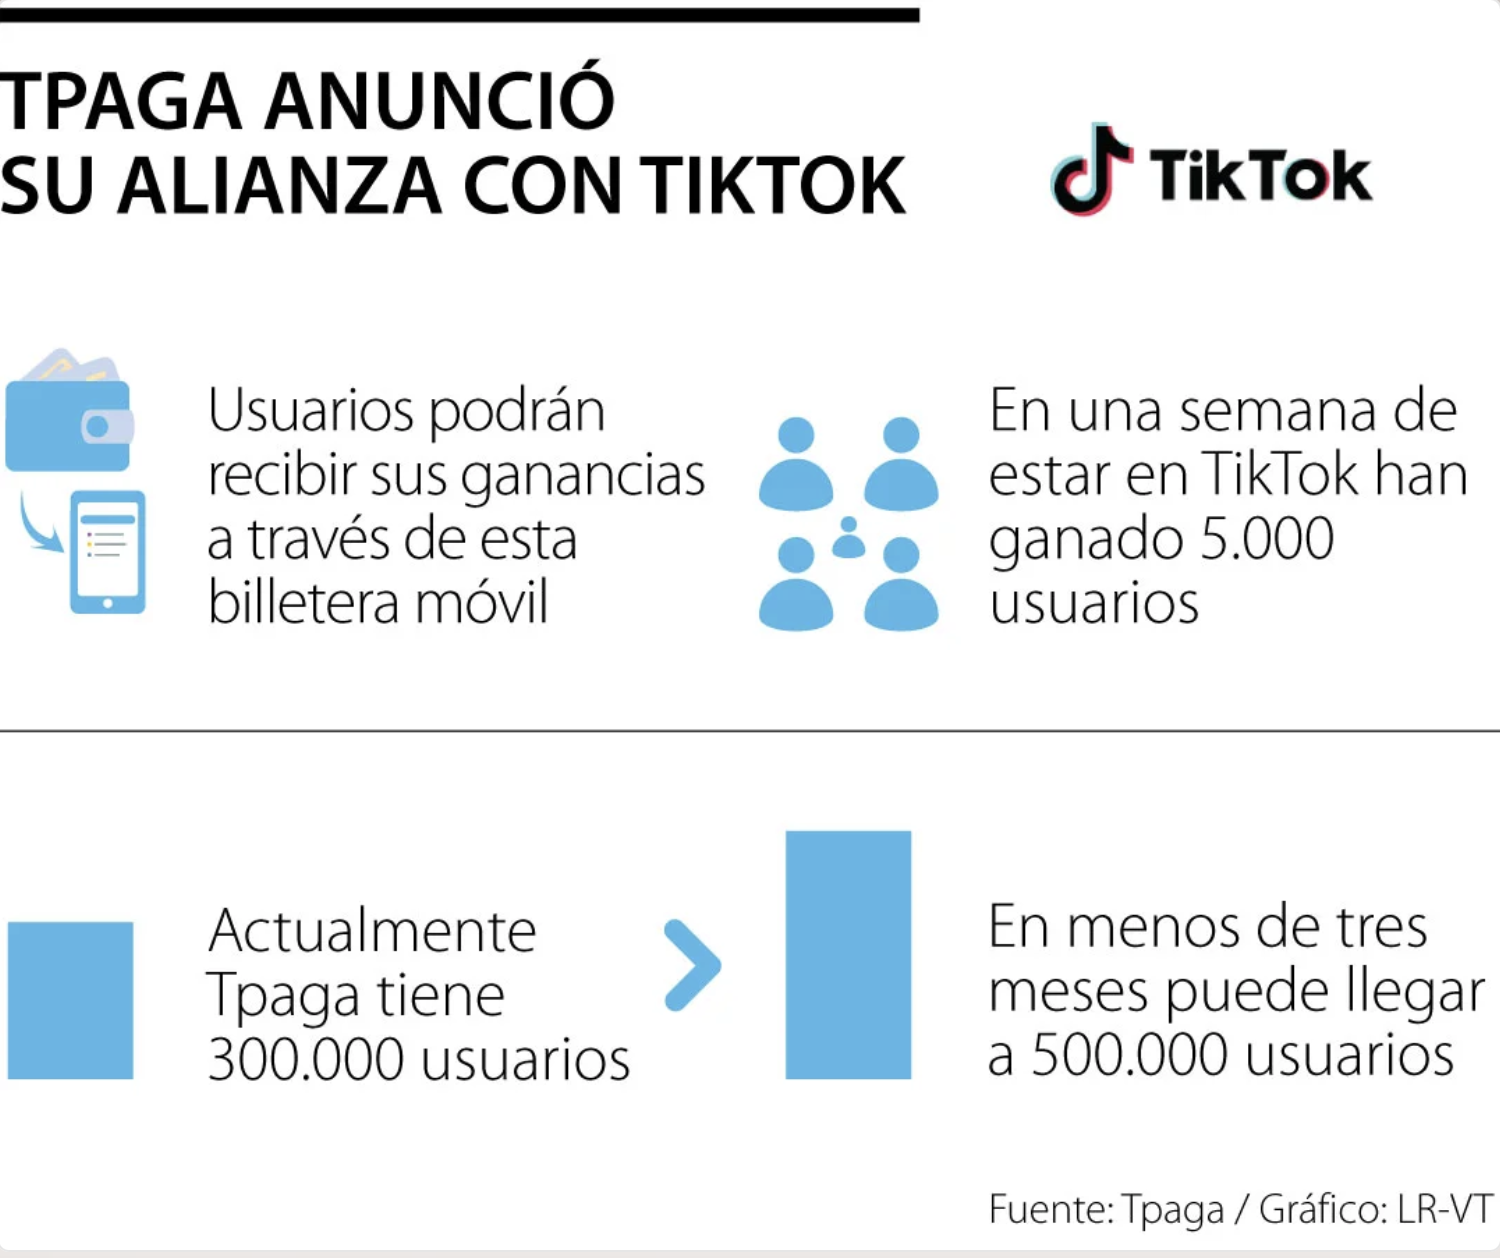 Los usuarios de TikTok en Colombia podrán recibir ganancias a través de Tpaga